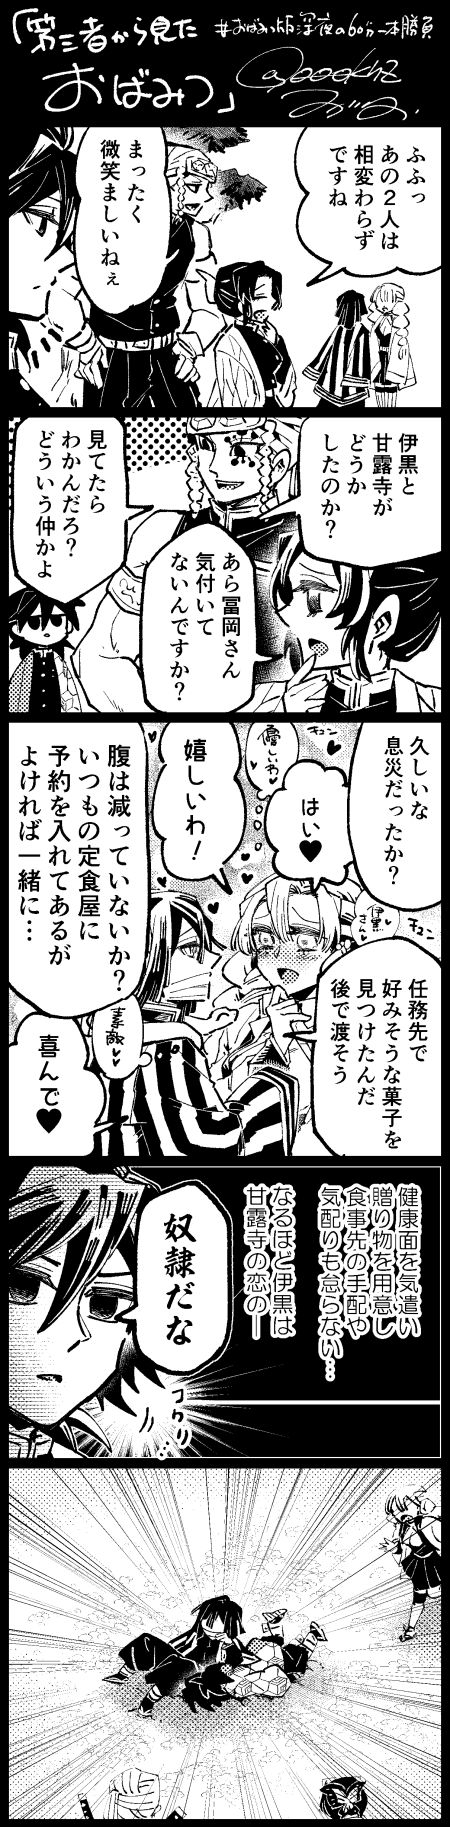 [Wogata] ObaMitsu Manga + E Rogu Sono 2 4